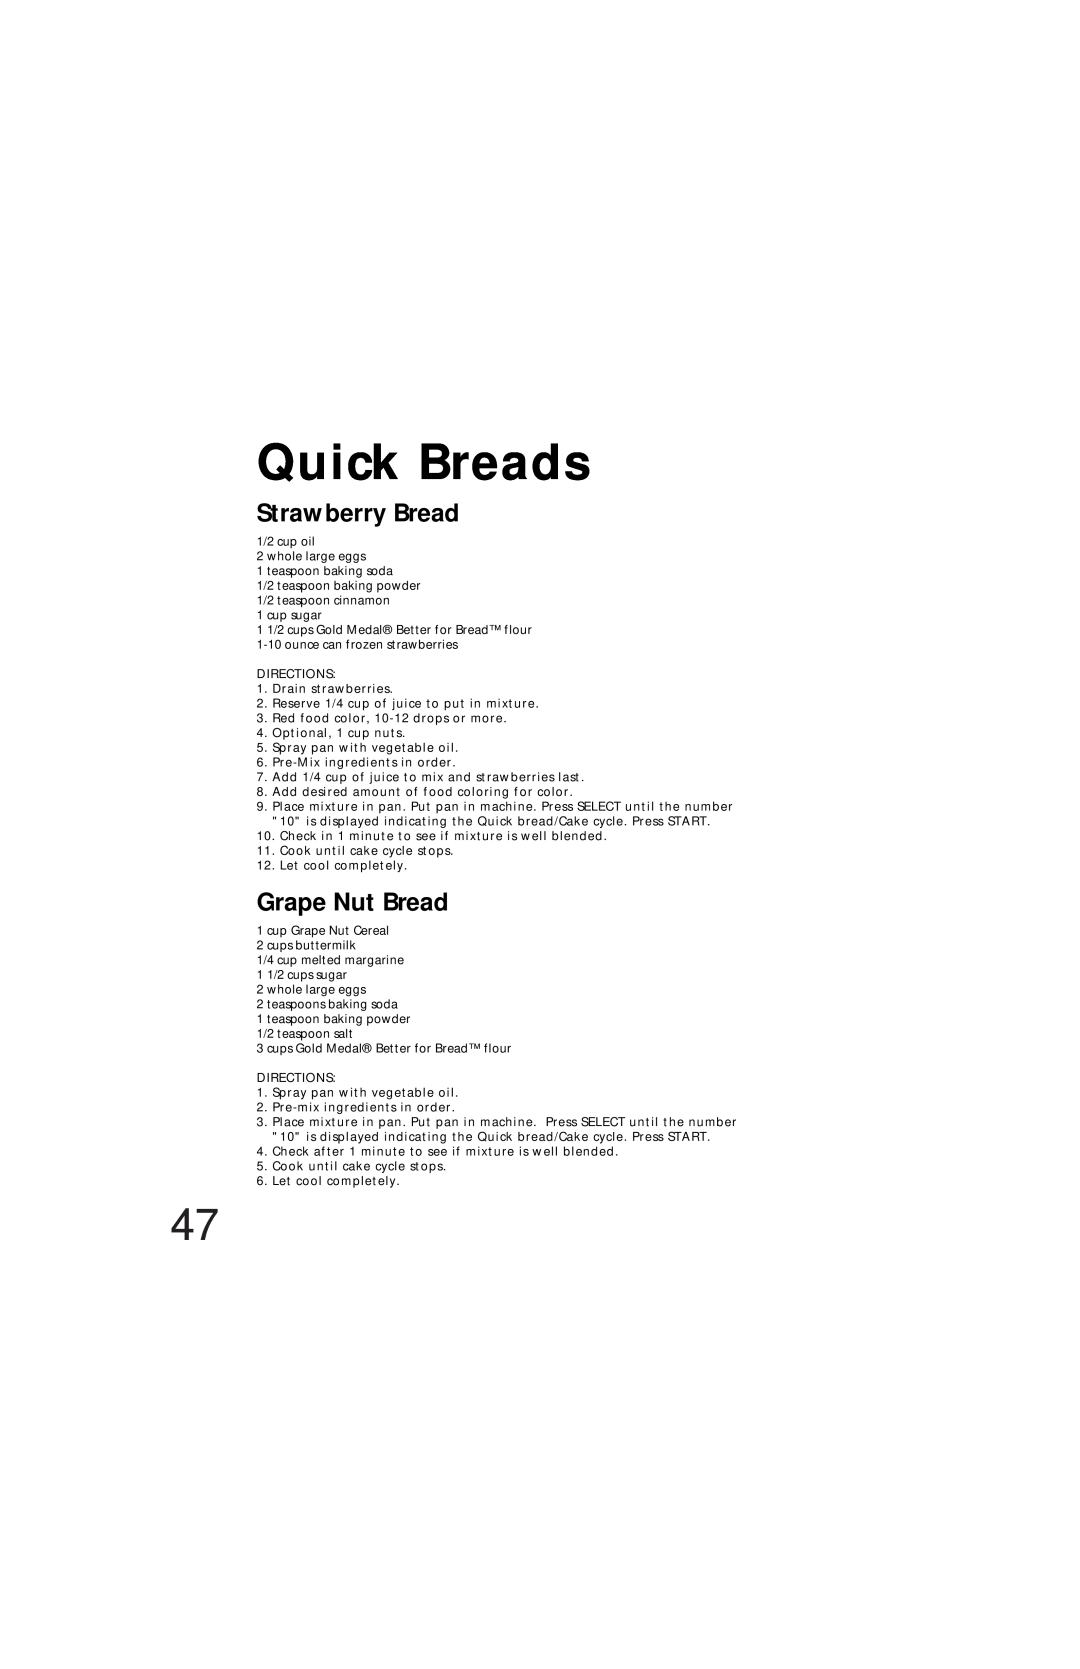 Oster Bread & Dough Maker manual Quick Breads, Strawberry Bread, Grape Nut Bread 